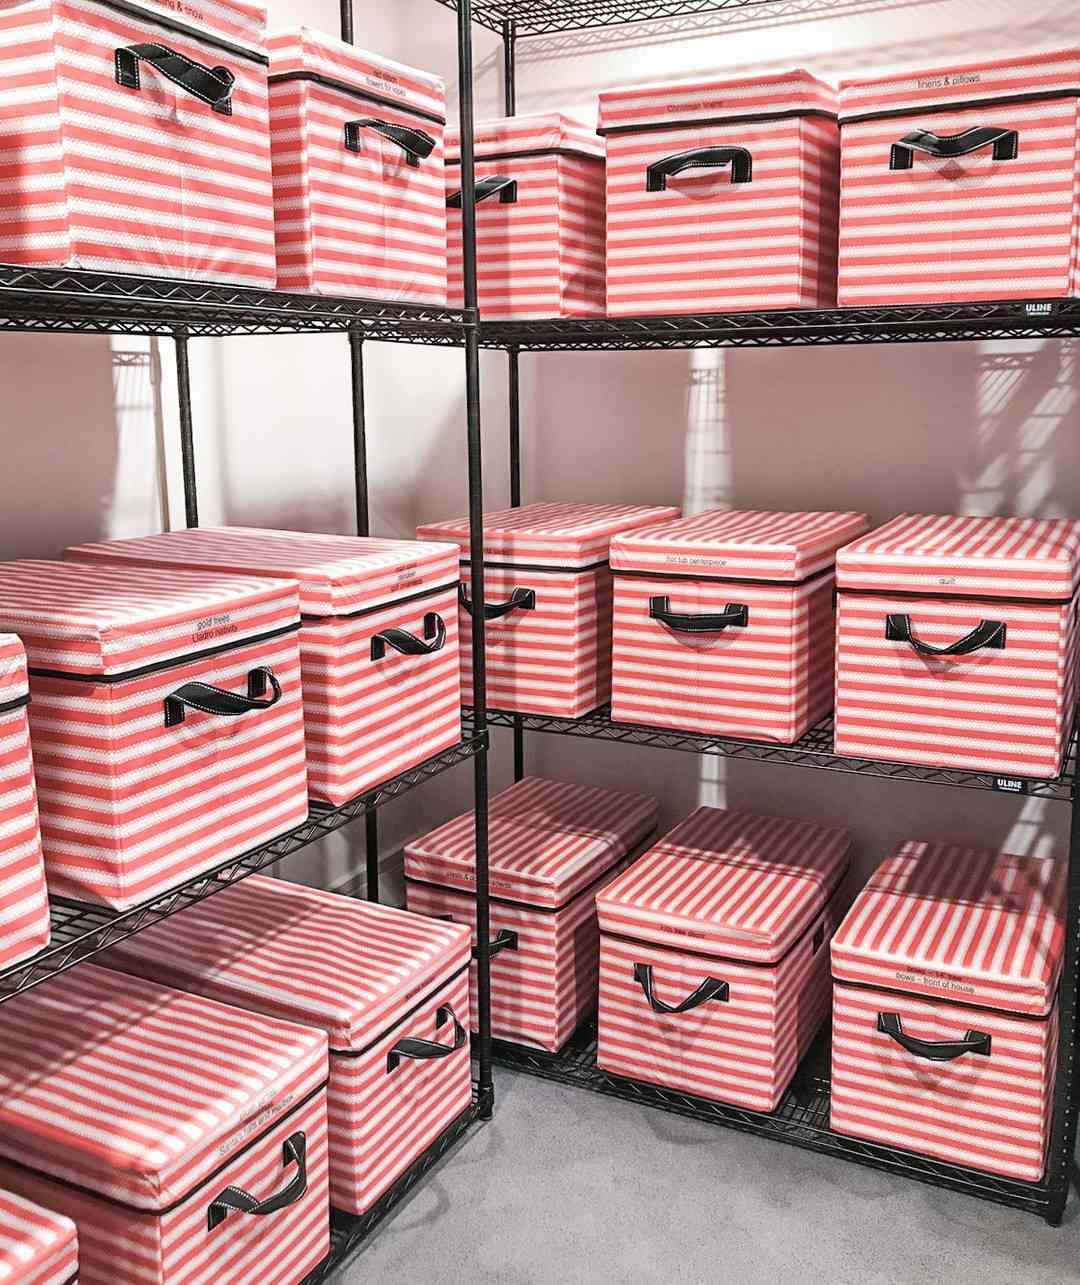 Caixas de armazenamento listradas de vermelho e branco em prateleiras industriais pretas